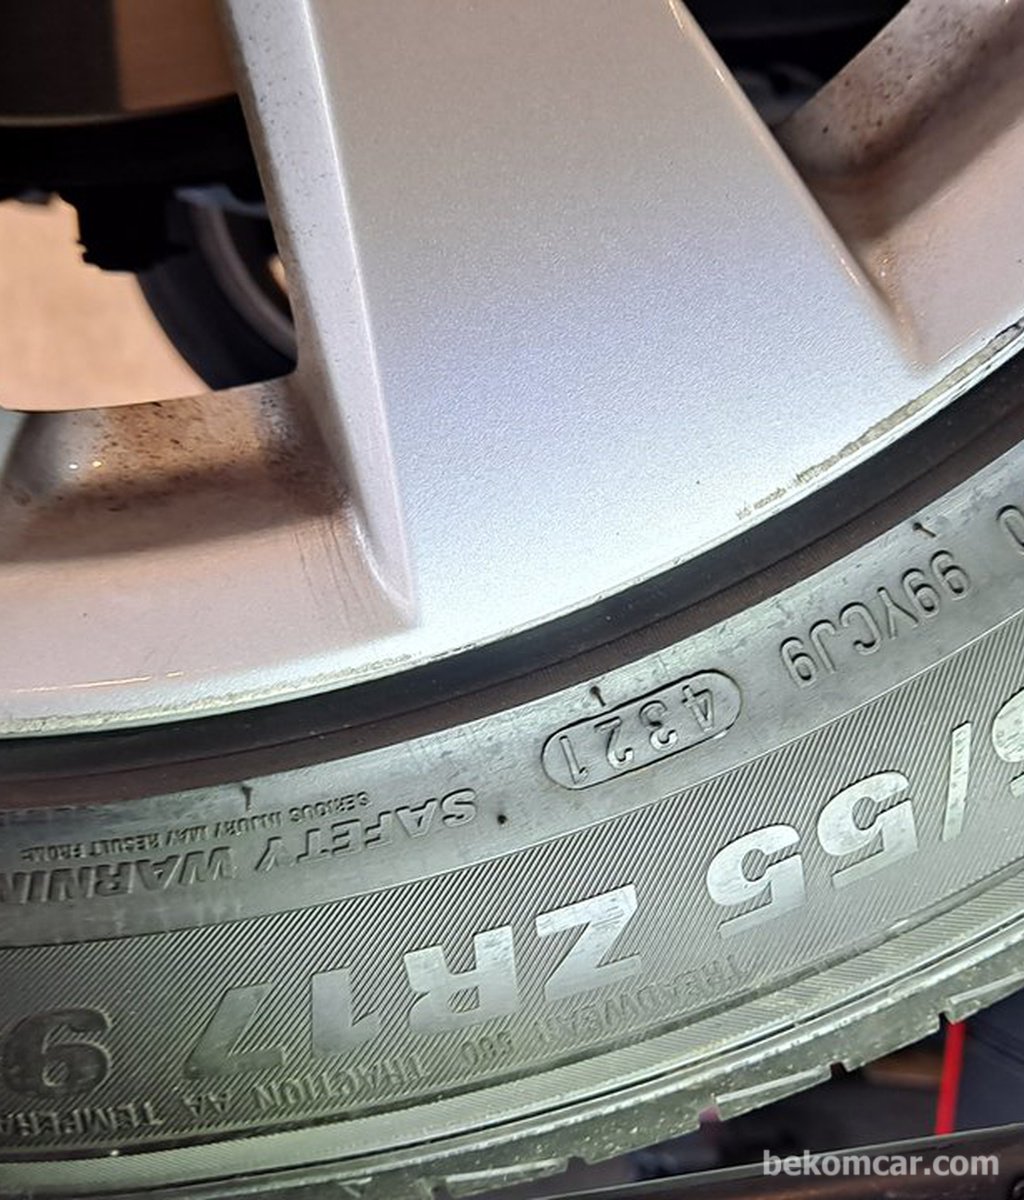 중고차구매 점검에 타이어 상태는 꼭 파악하여 정비비에 포함한다.|bekomcar.com